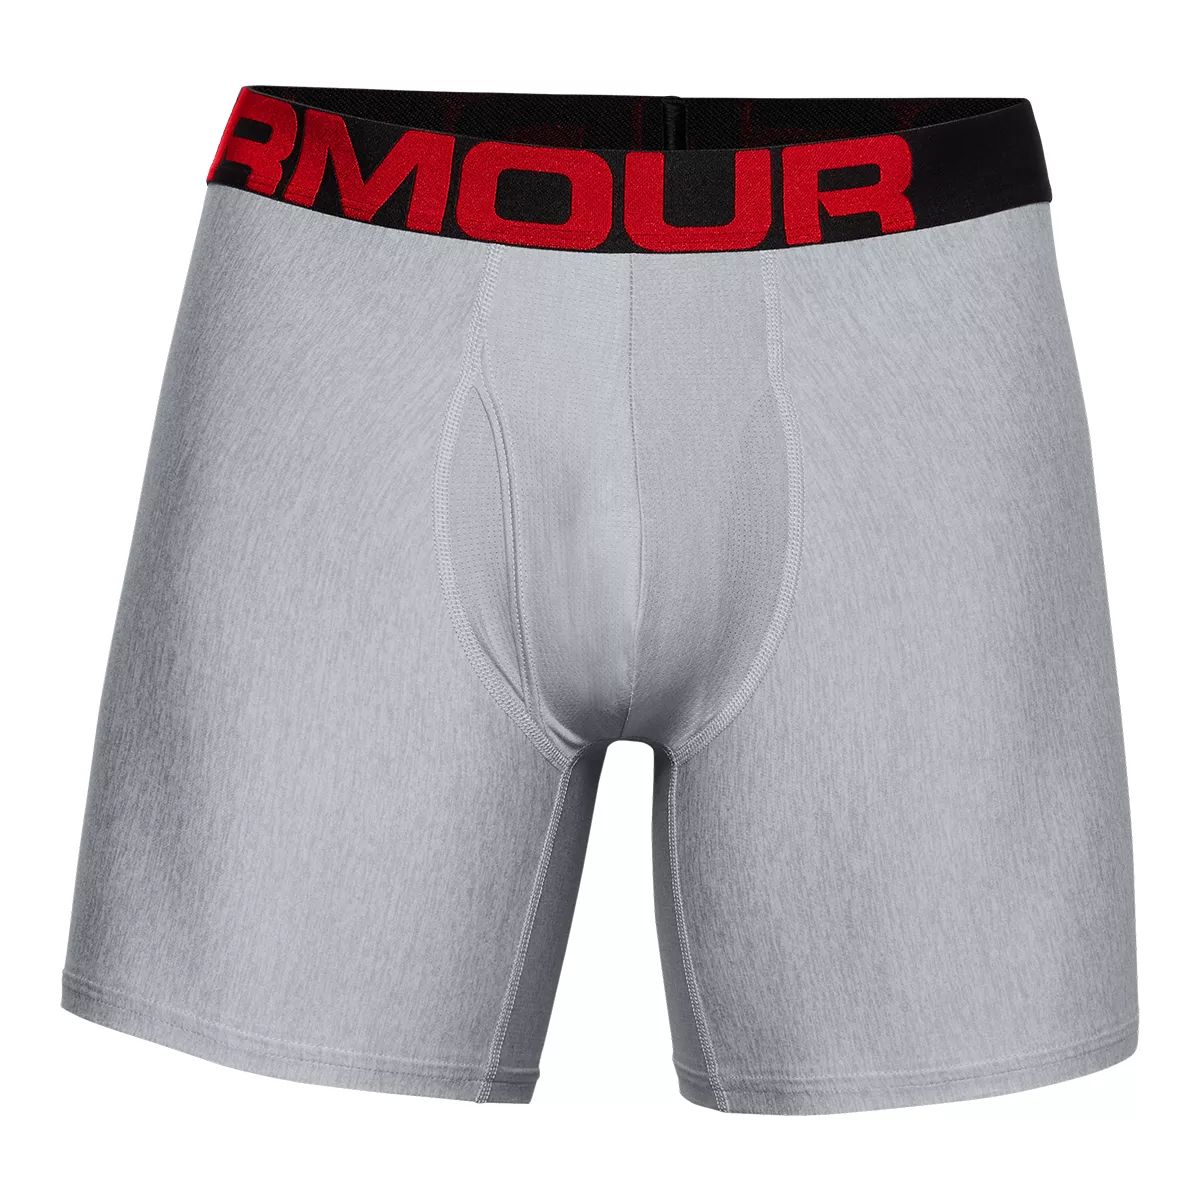 Under Armour Tech 6 Inch Men's Boxer Brief, Underwear, Moisture-Wicking